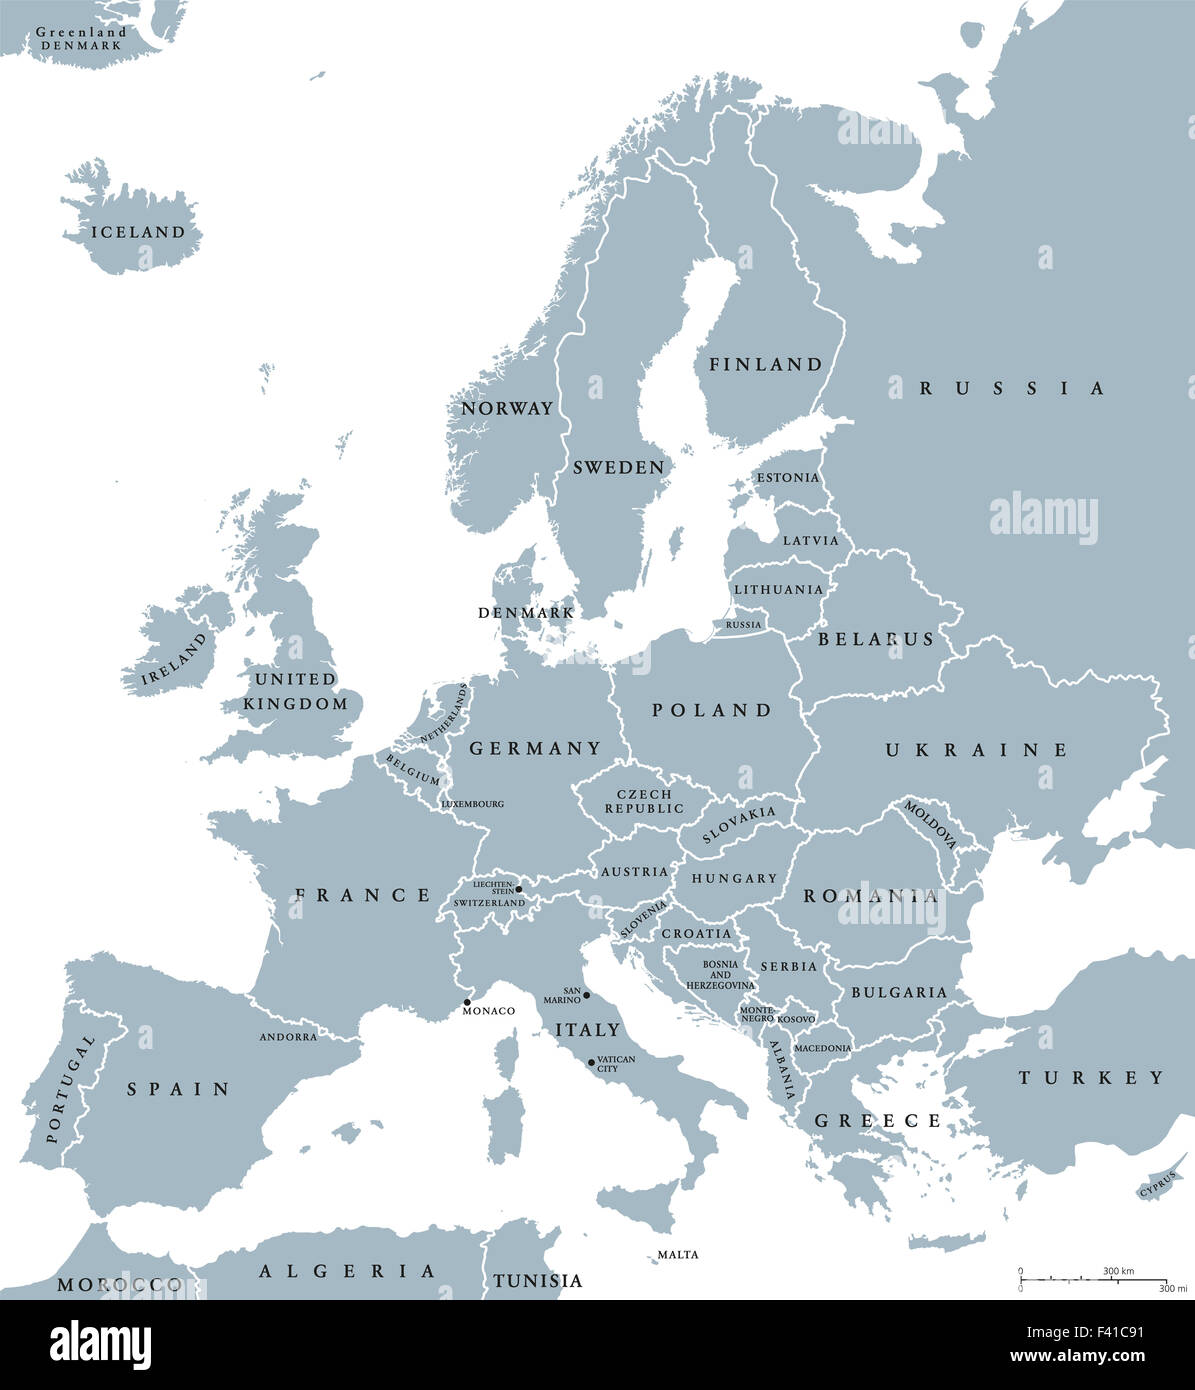 Ländern politische Landkarte Europas mit Ländergrenzen und Ländernamen. Englische Beschriftung und Skalierung. Abbildung auf weiß. Stockfoto